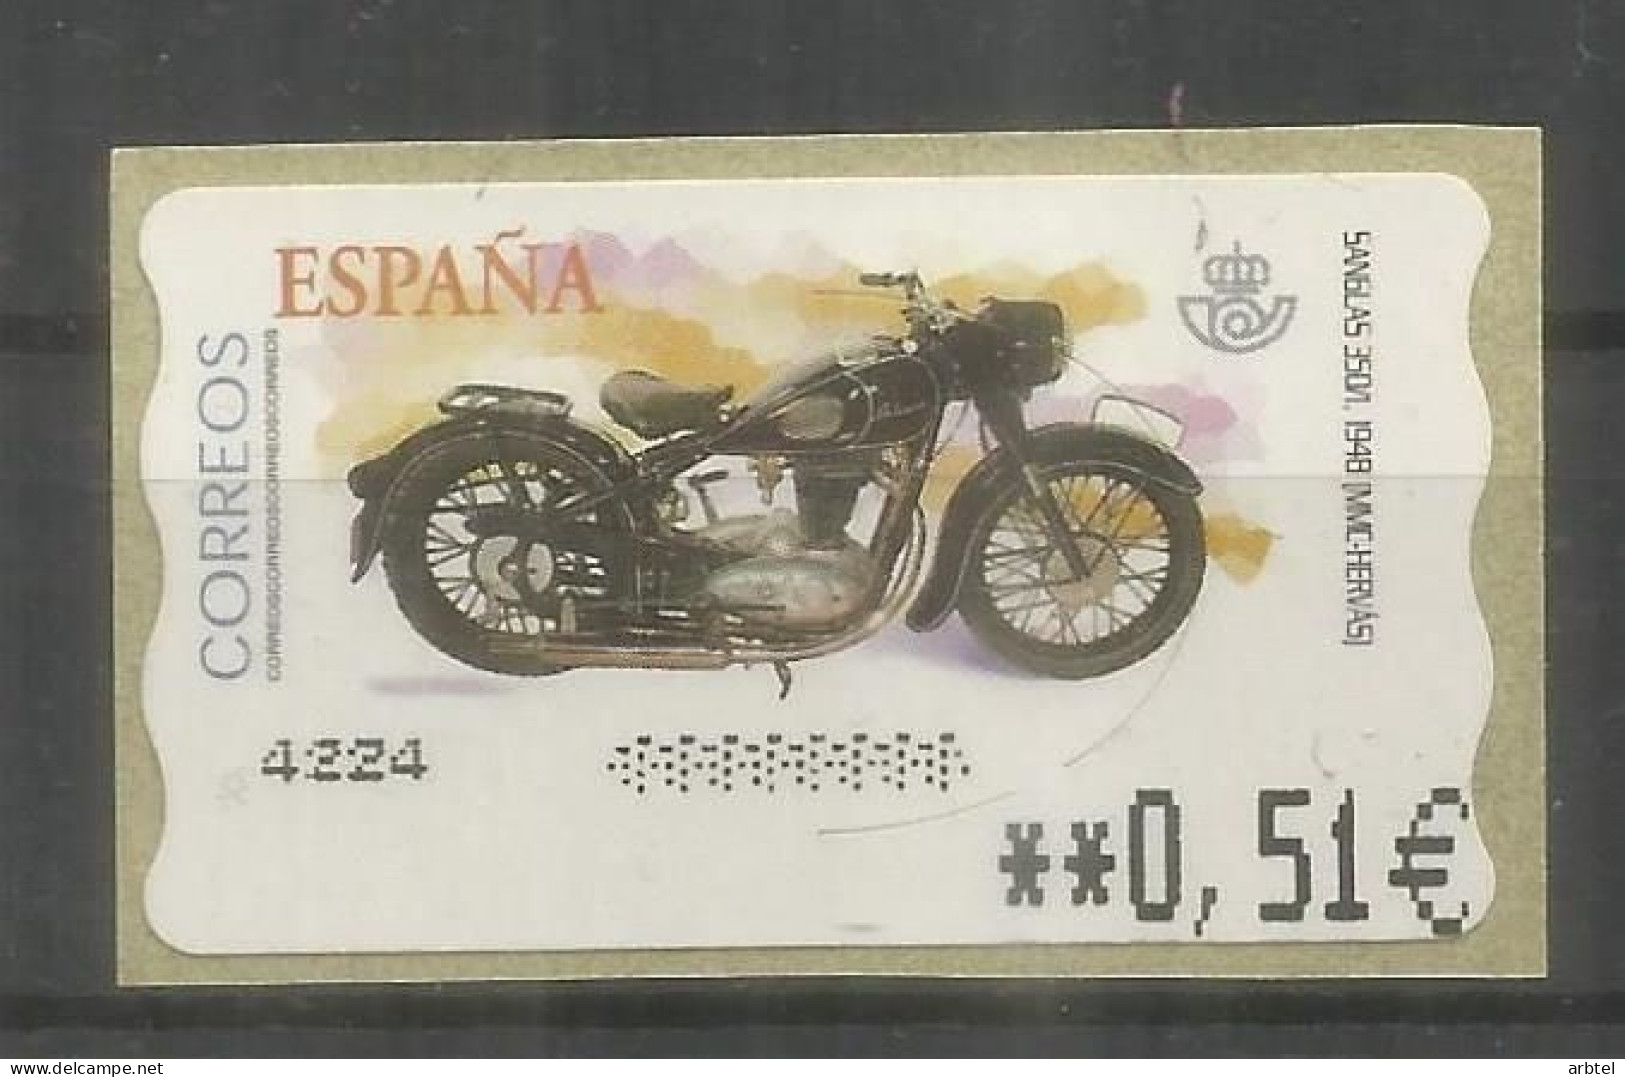 ESPAÑA SPAIN ATM MOTO MOTORCYCLE SANGLAS CON LEYENDA PUNTOS - Motorräder